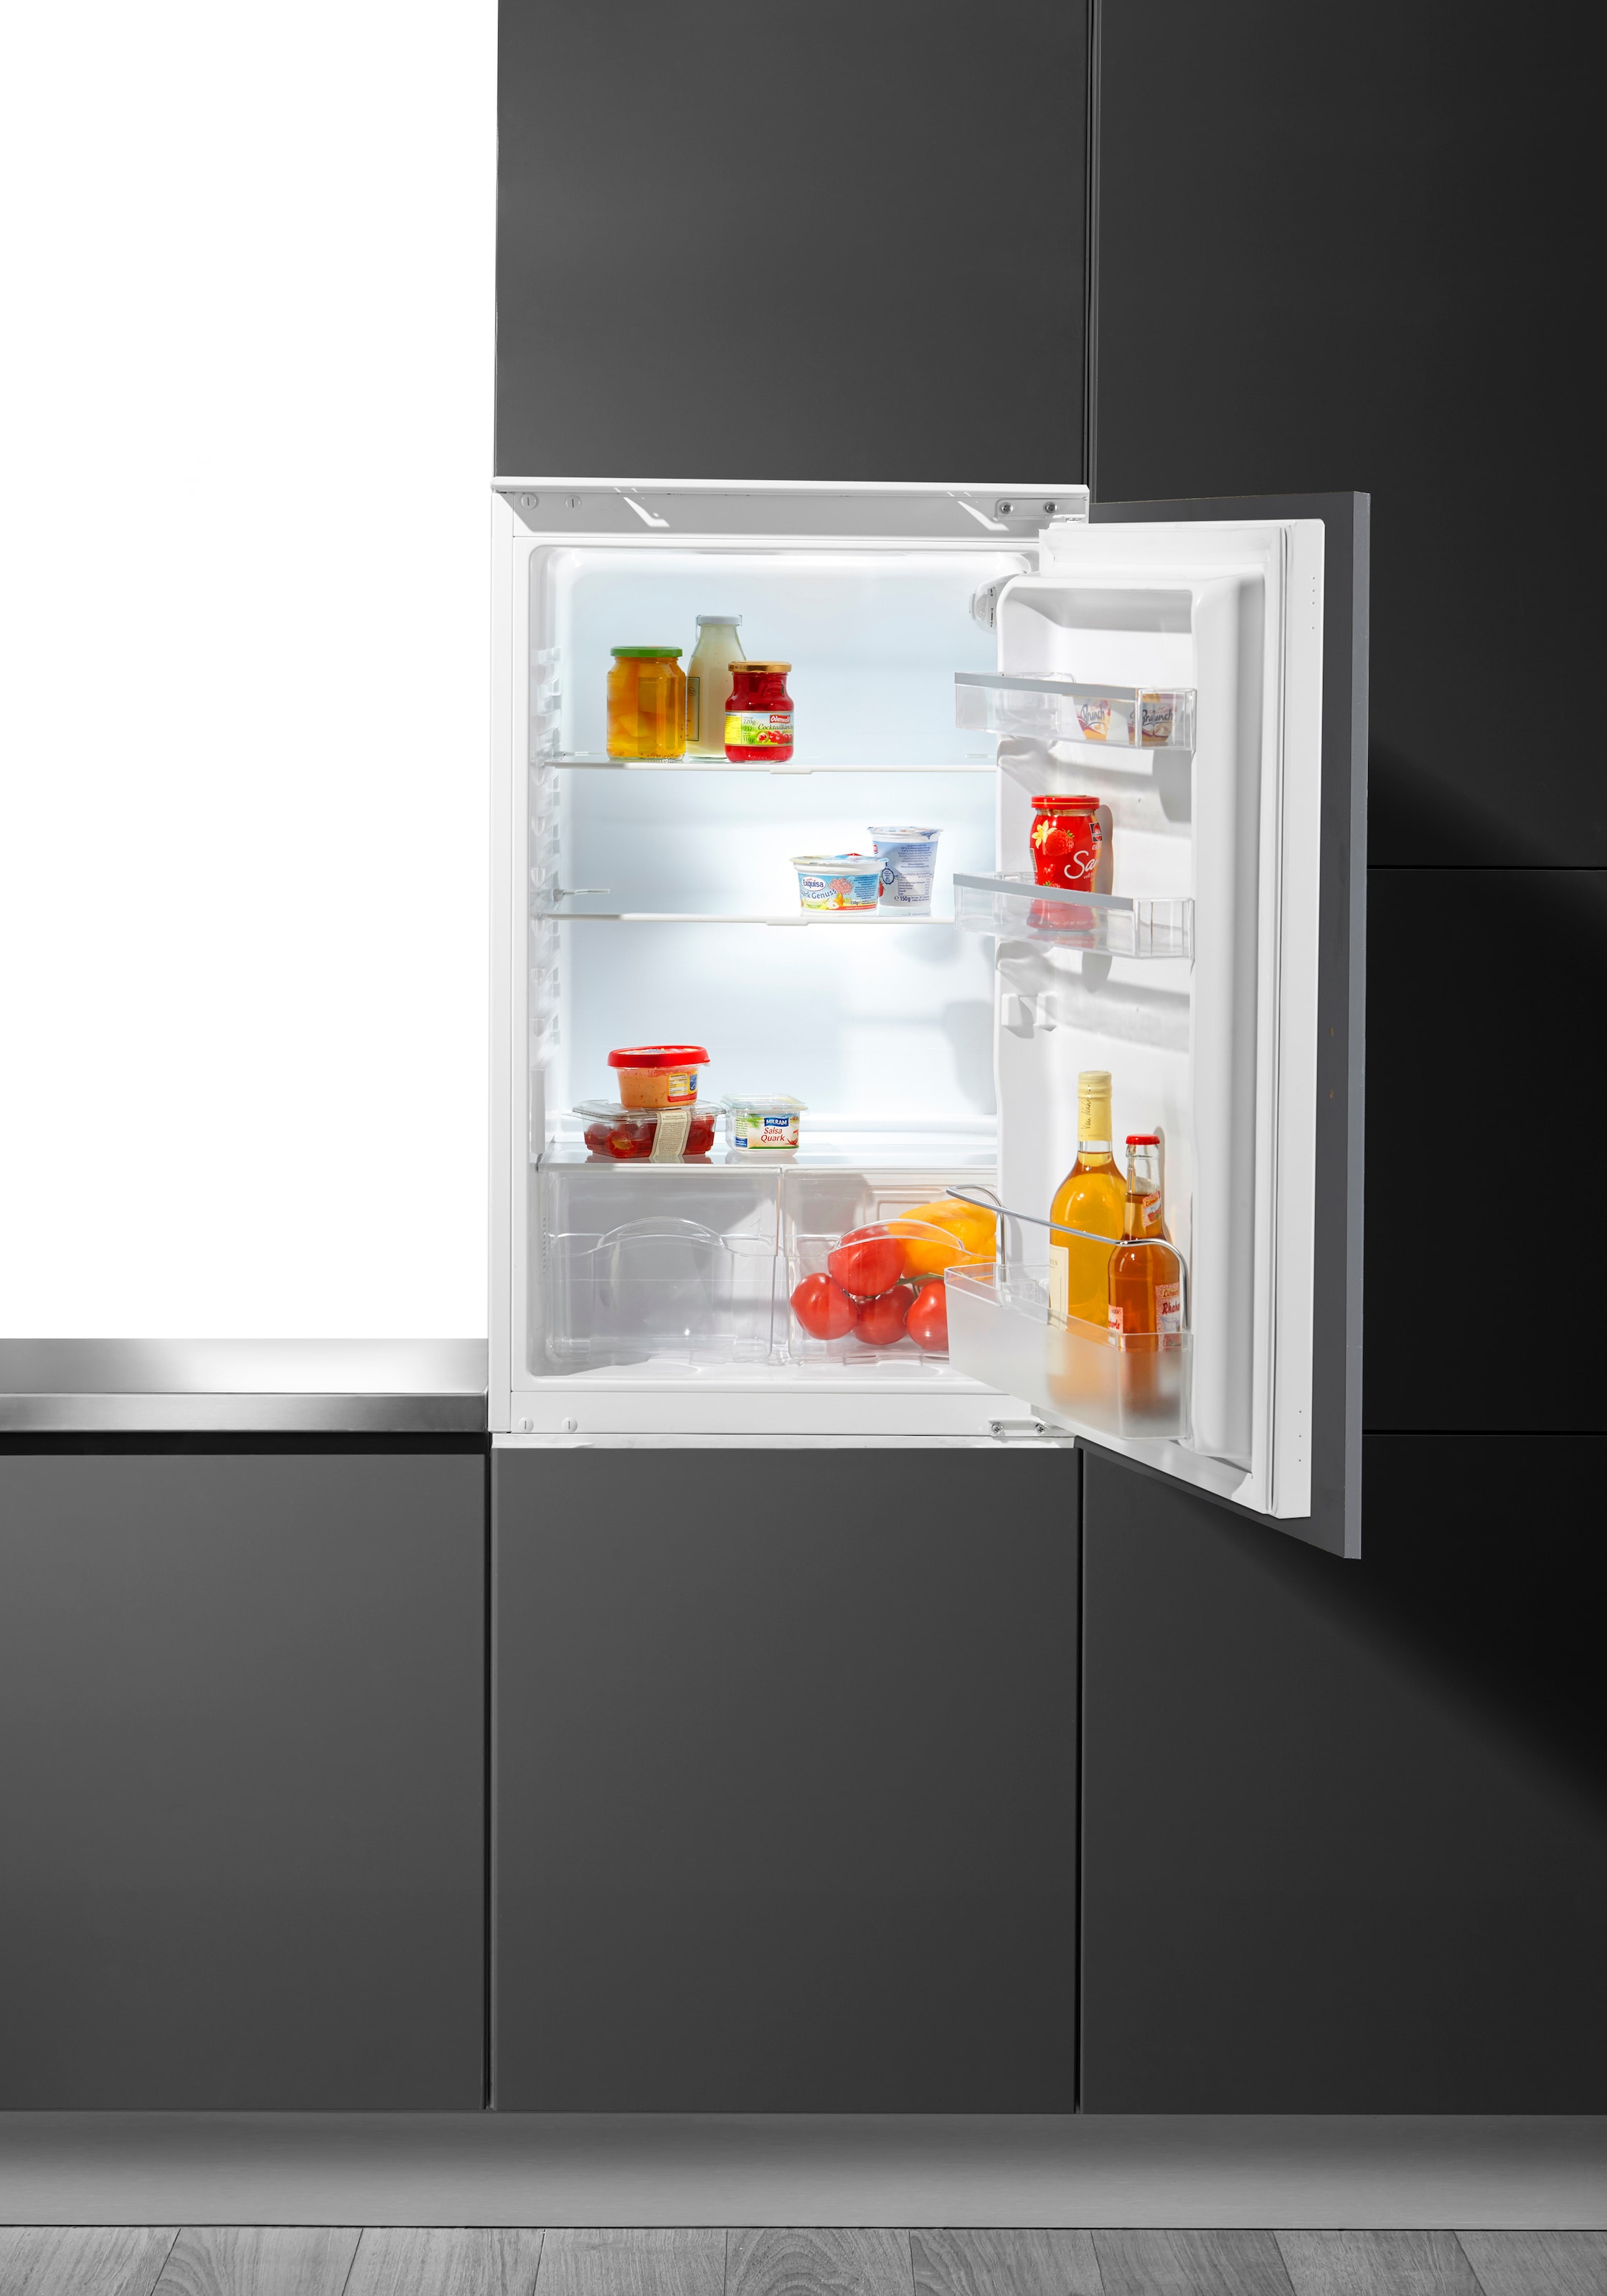 Einbau Kühlschränke ohne Gefrierfach online kaufen